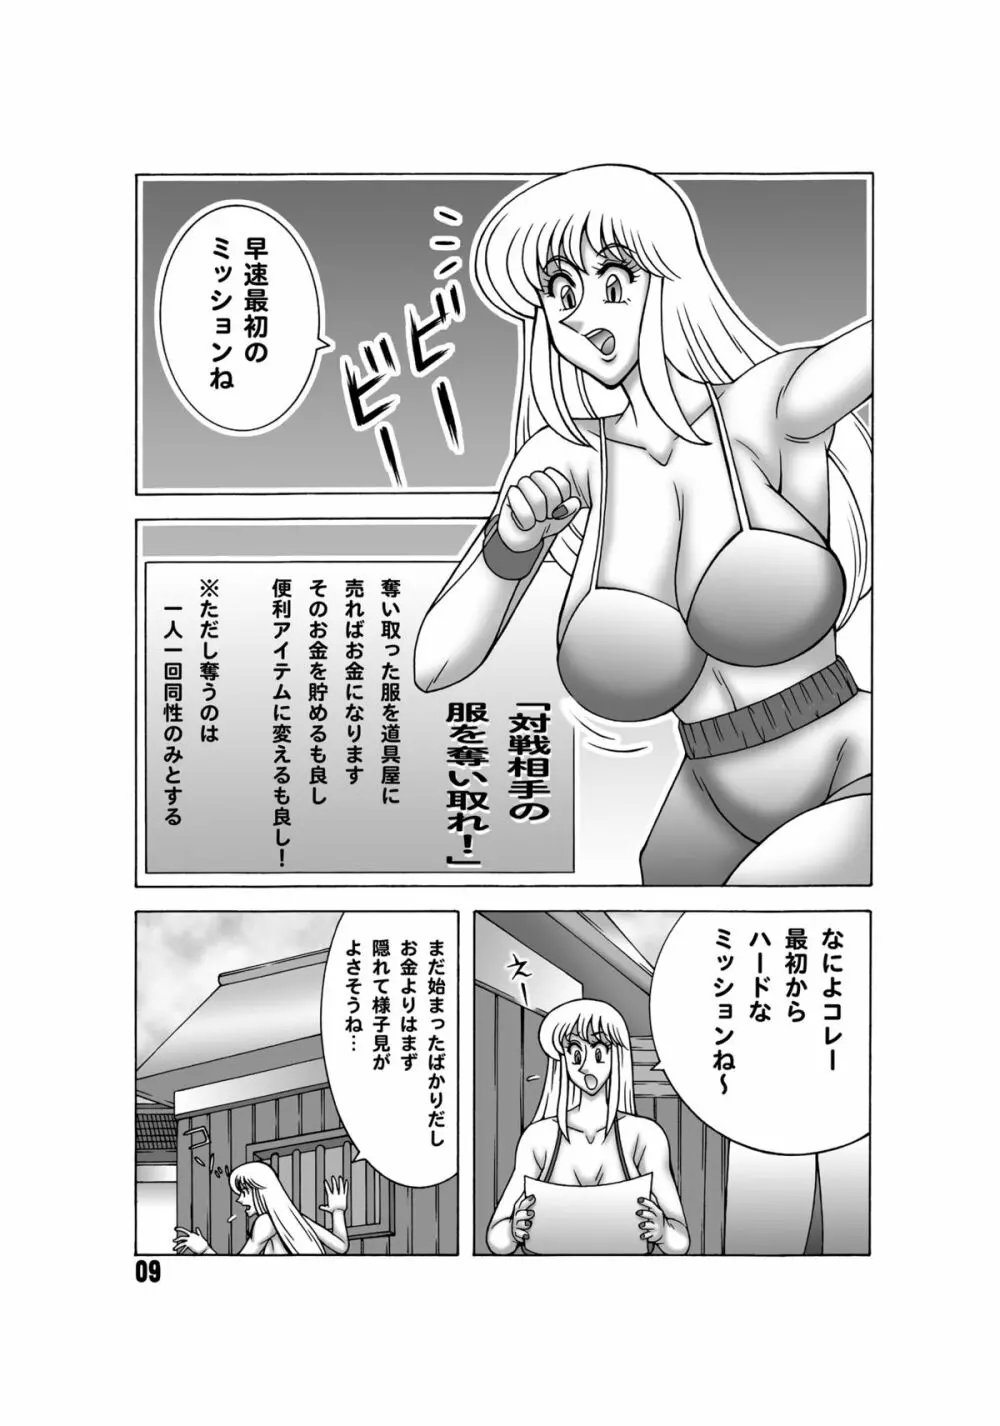 こち亀ダイナマイト 13 - page8